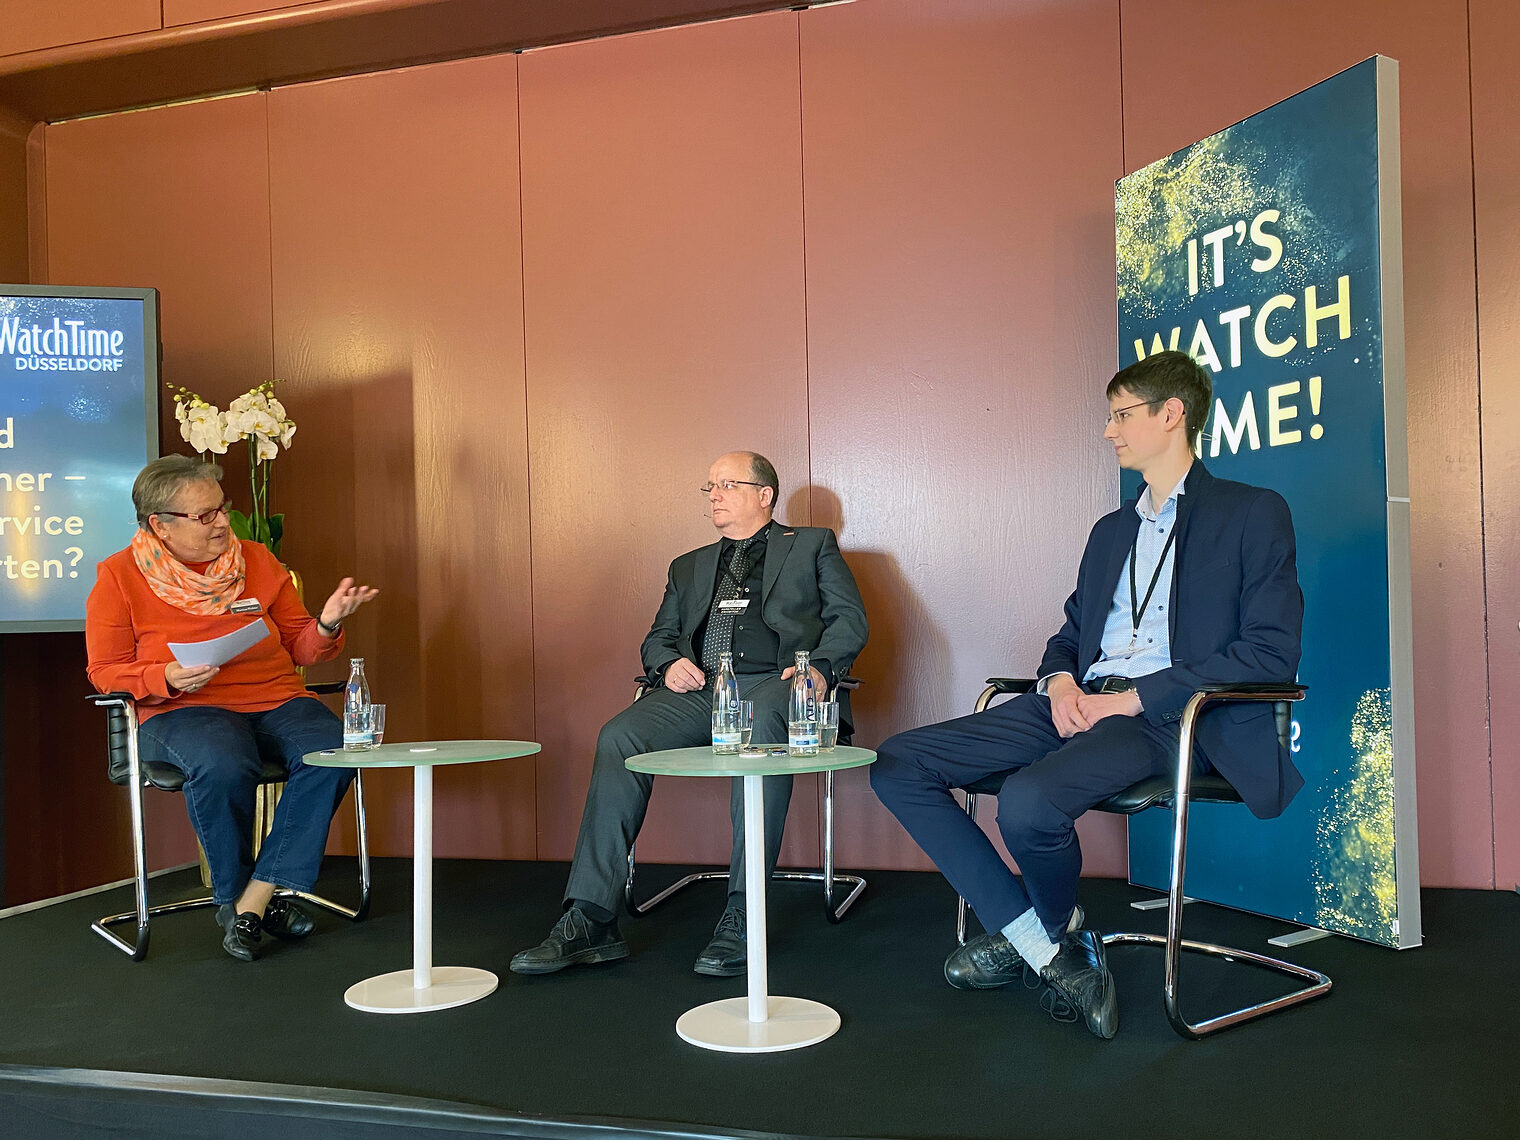 Podiumsidiskussion zwischen Martina Richter, Michael Eberlein und Johannes Imhof über die WatchTime